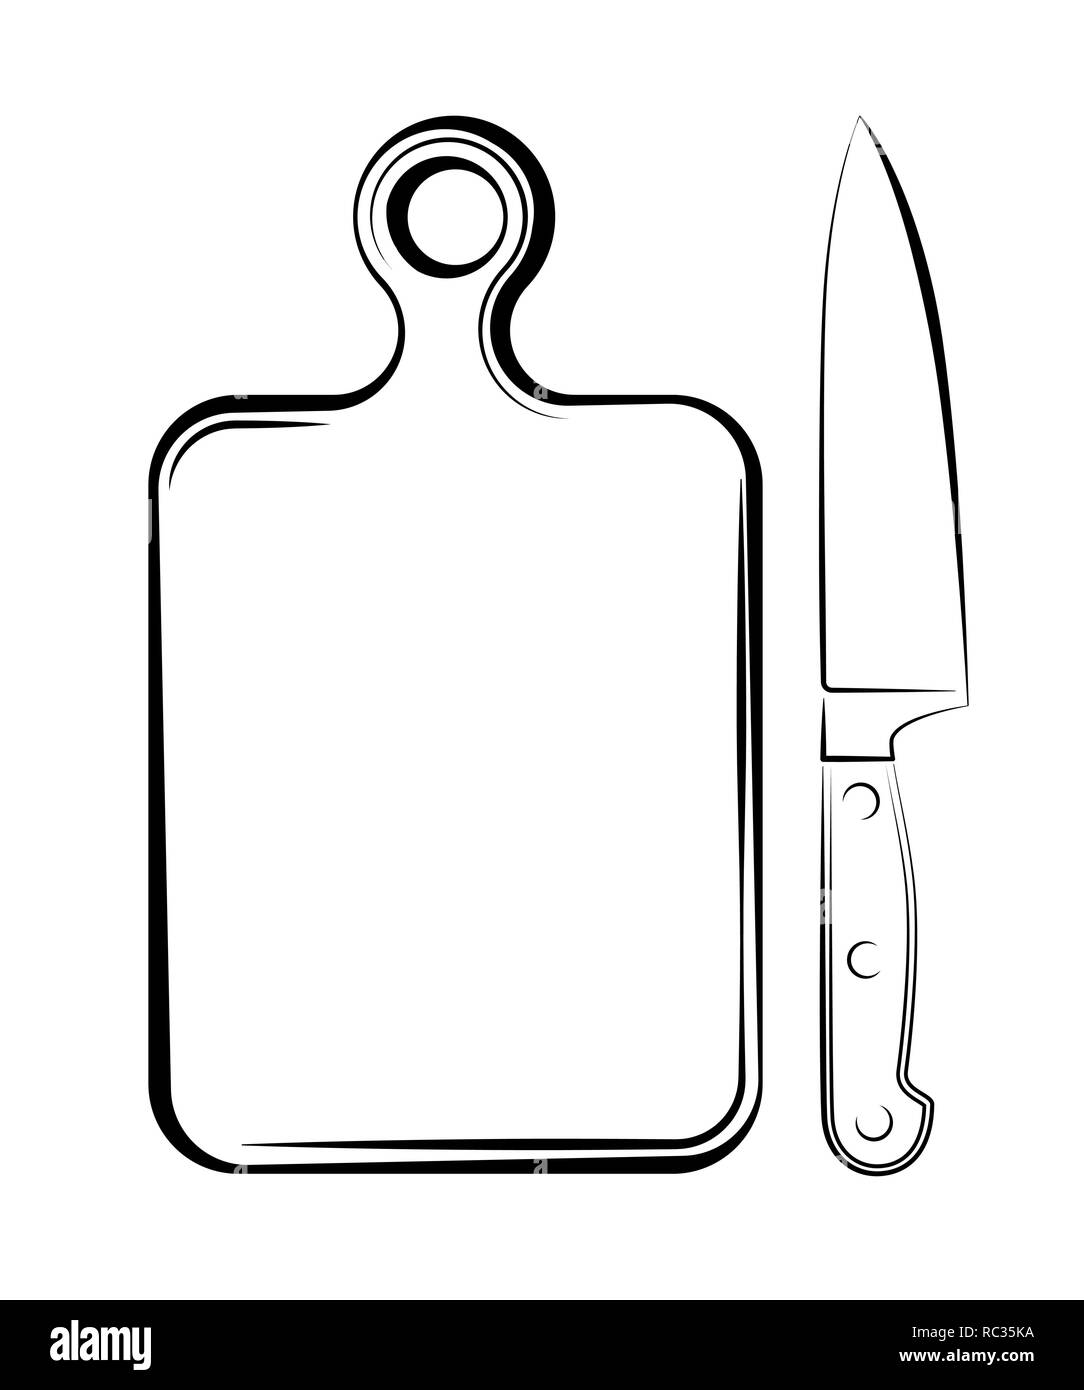 Un couteau bien aiguisé et une planche à découper dans la cuisine du restaurant de l'hôtel. Logo noir et blanc vierge. Le processus de cuisson. Illustration de Vecteur